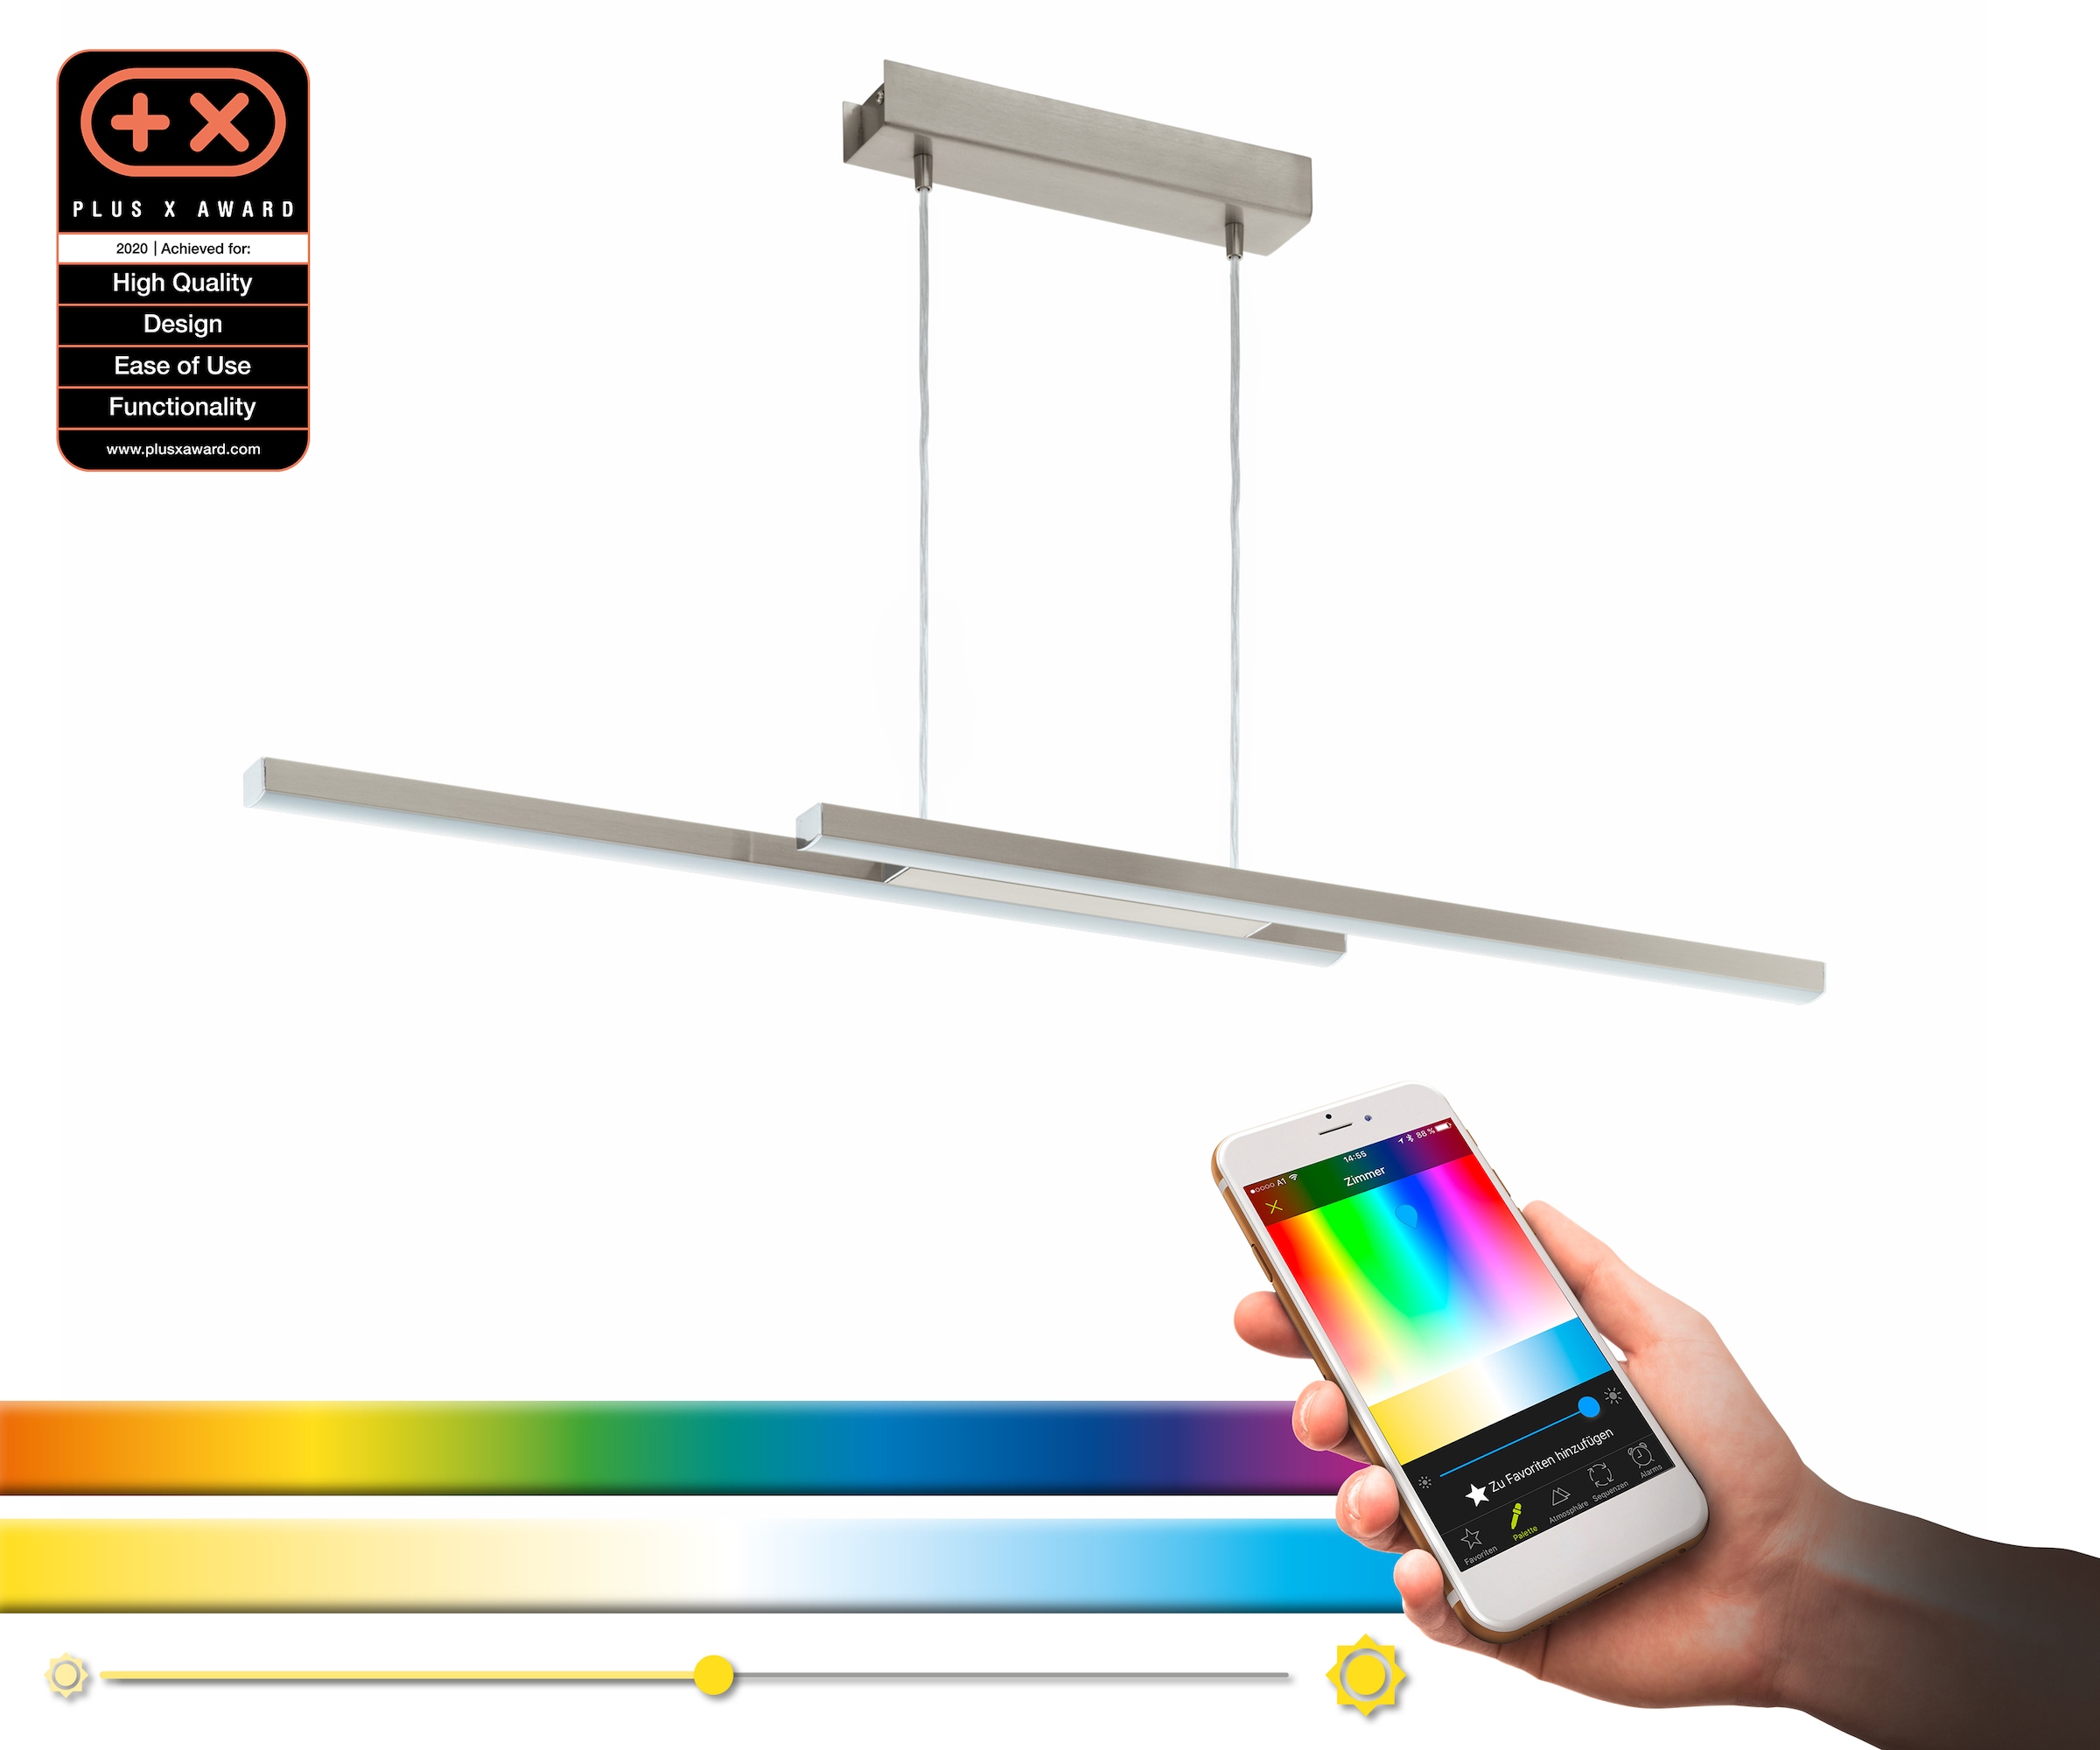 EGLO Pendelleuchte »FRAIOLI-C«, LED-Board, nickel-matt / L105,5 x H120 x B10 cm / inkl. 2 x LED-Platine (je 17W, 2300lm, 2700-6500K) / Eglo Connect - App - CCT Farbtemperatursteuerung - dimmbar - RGB Farbwechsel - Fernbedienung - Esstischlampe